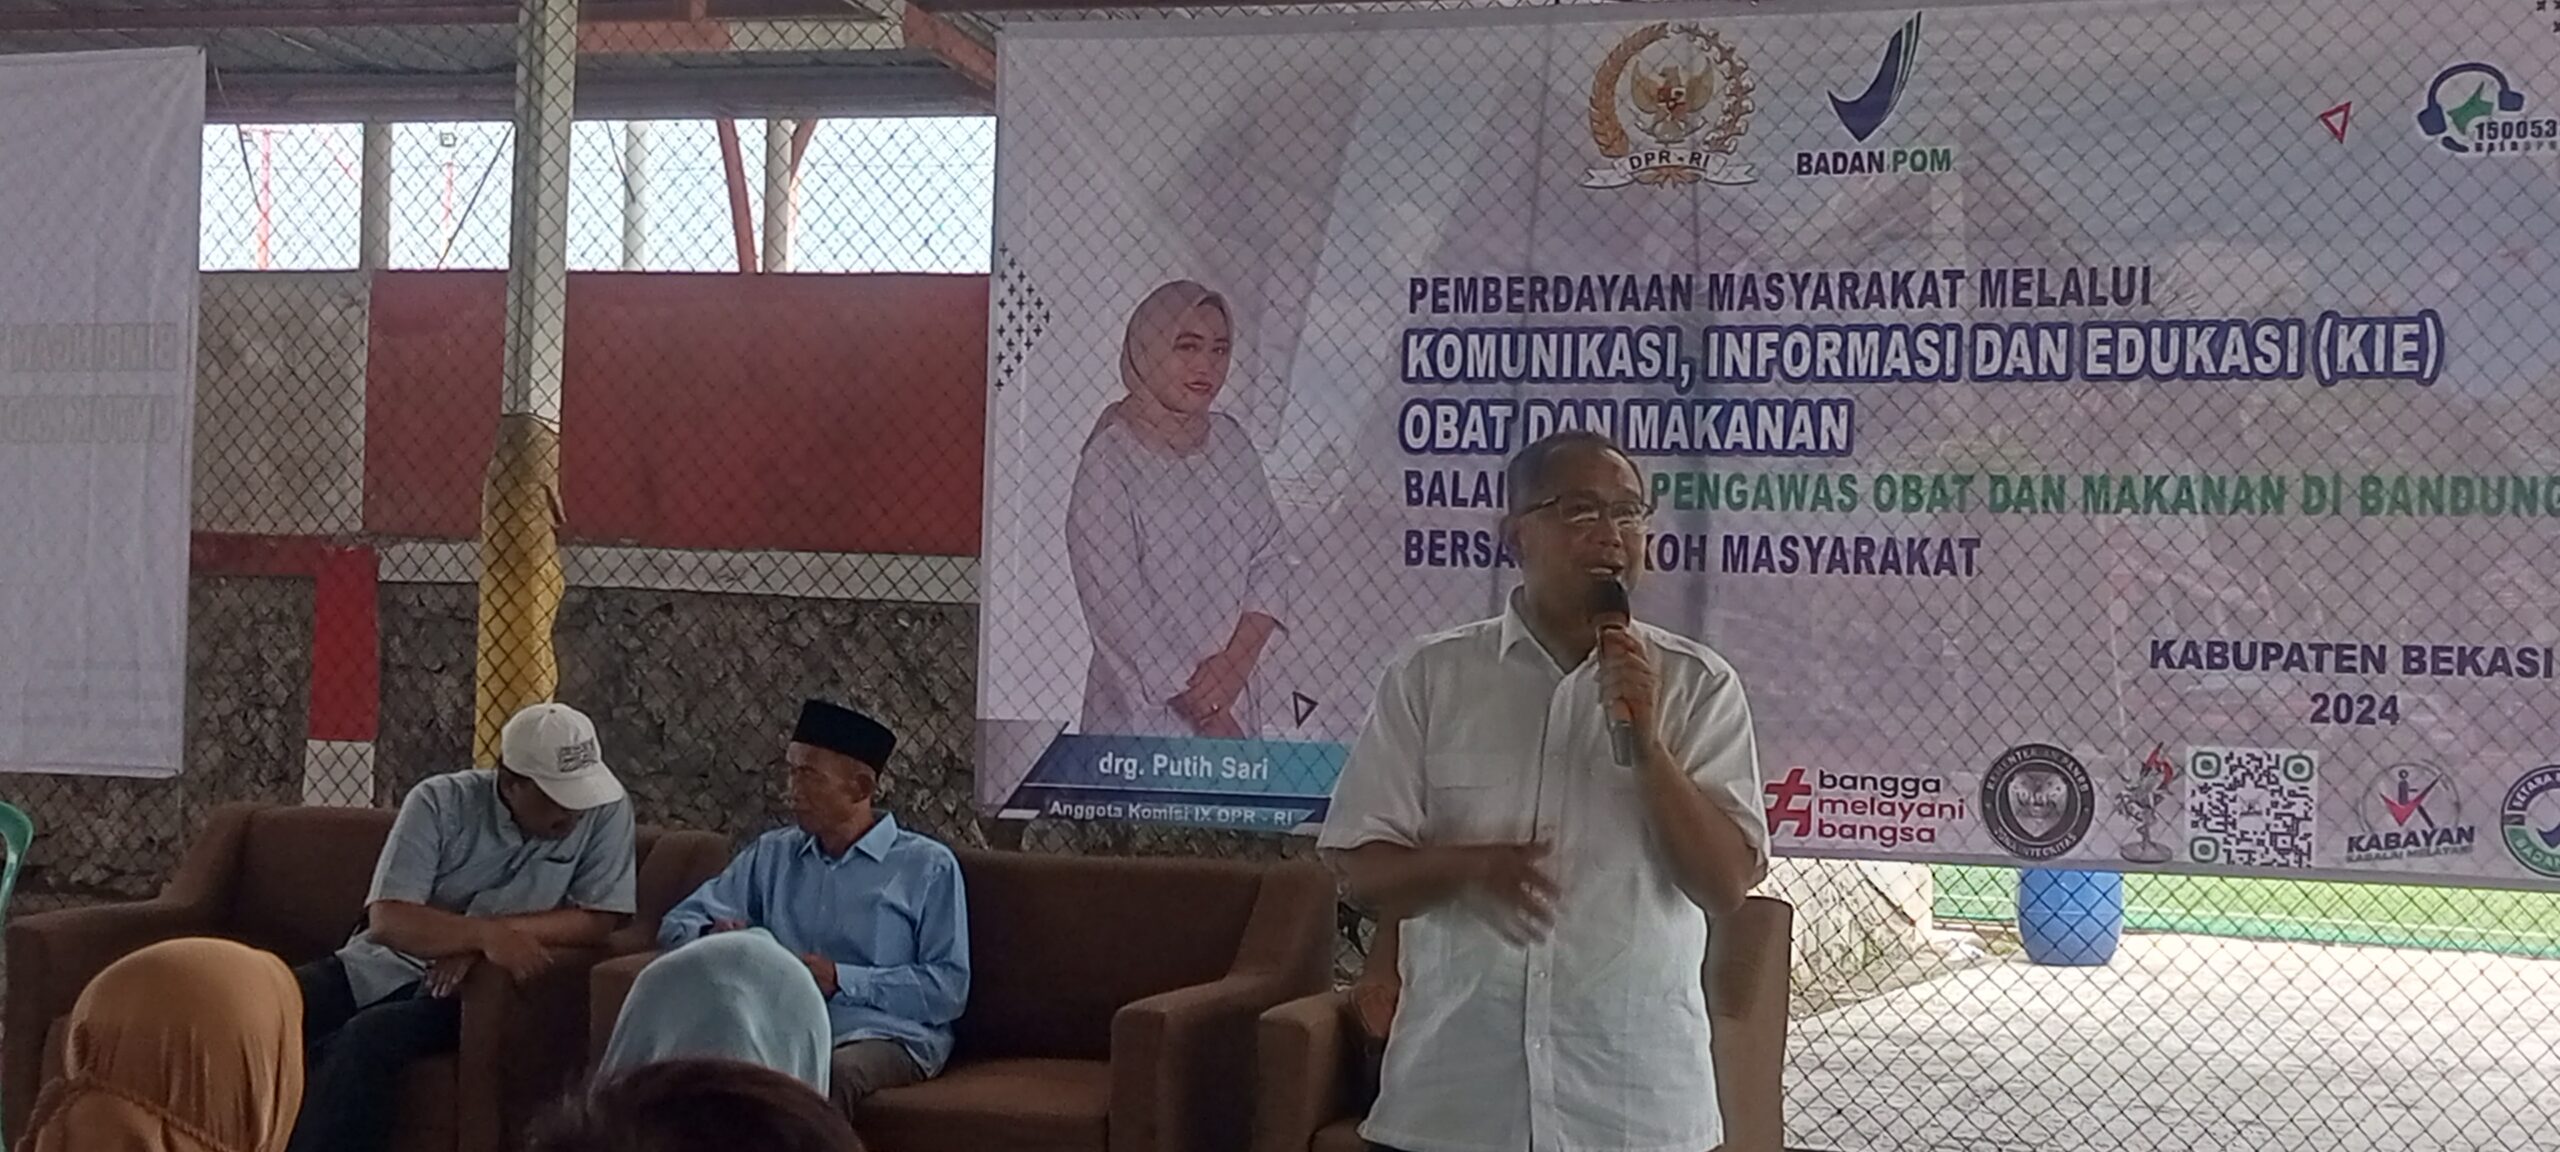 Drg Putih Sari Bersama BBPOM Di Bandung adakan sosialisasi KIE Di Bekasi